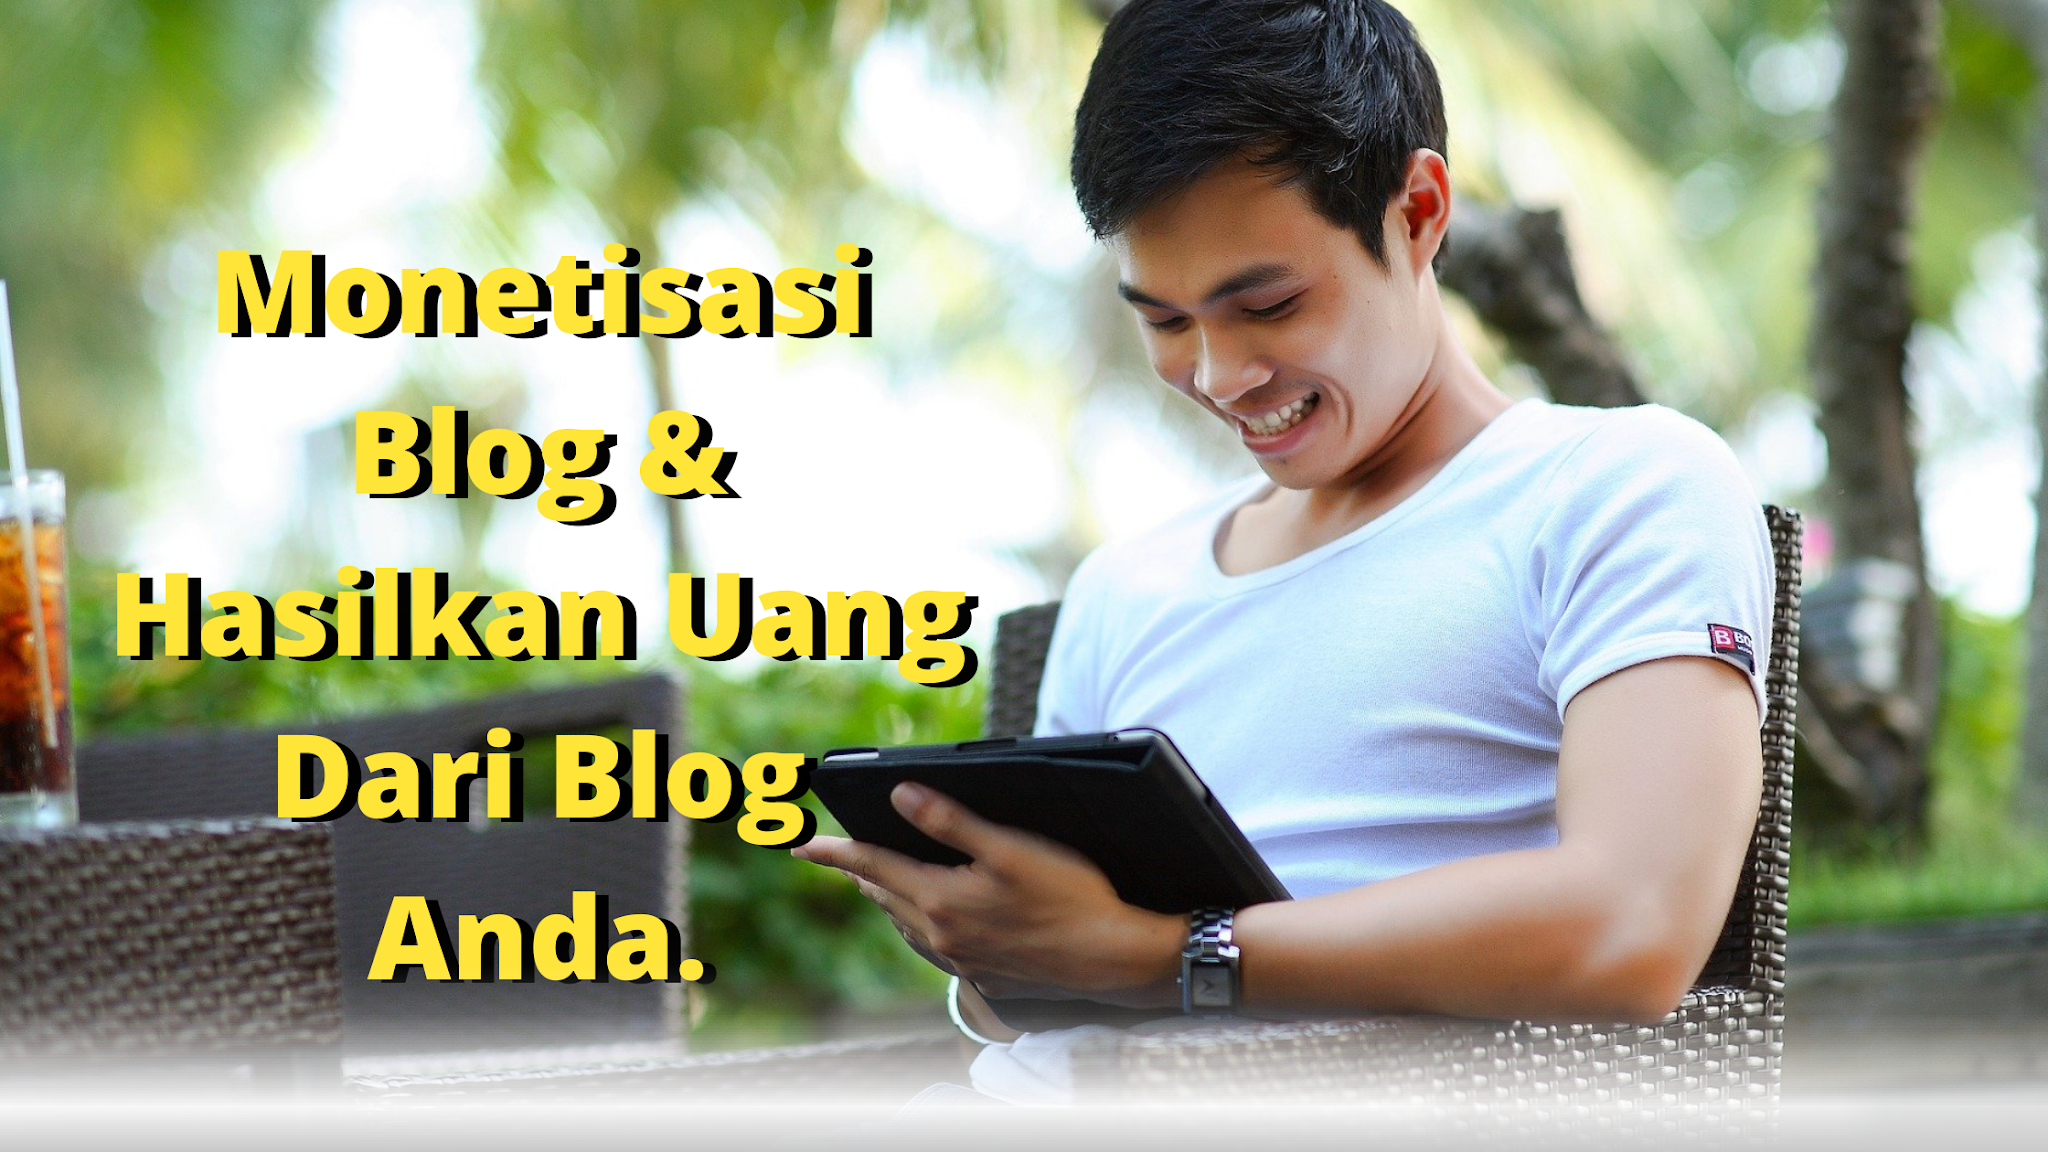 Monetisasi Blog Agar Menghasilkan Uang? Cobalah Lakukan Apa Yang Blogger Sukses Lakukan.